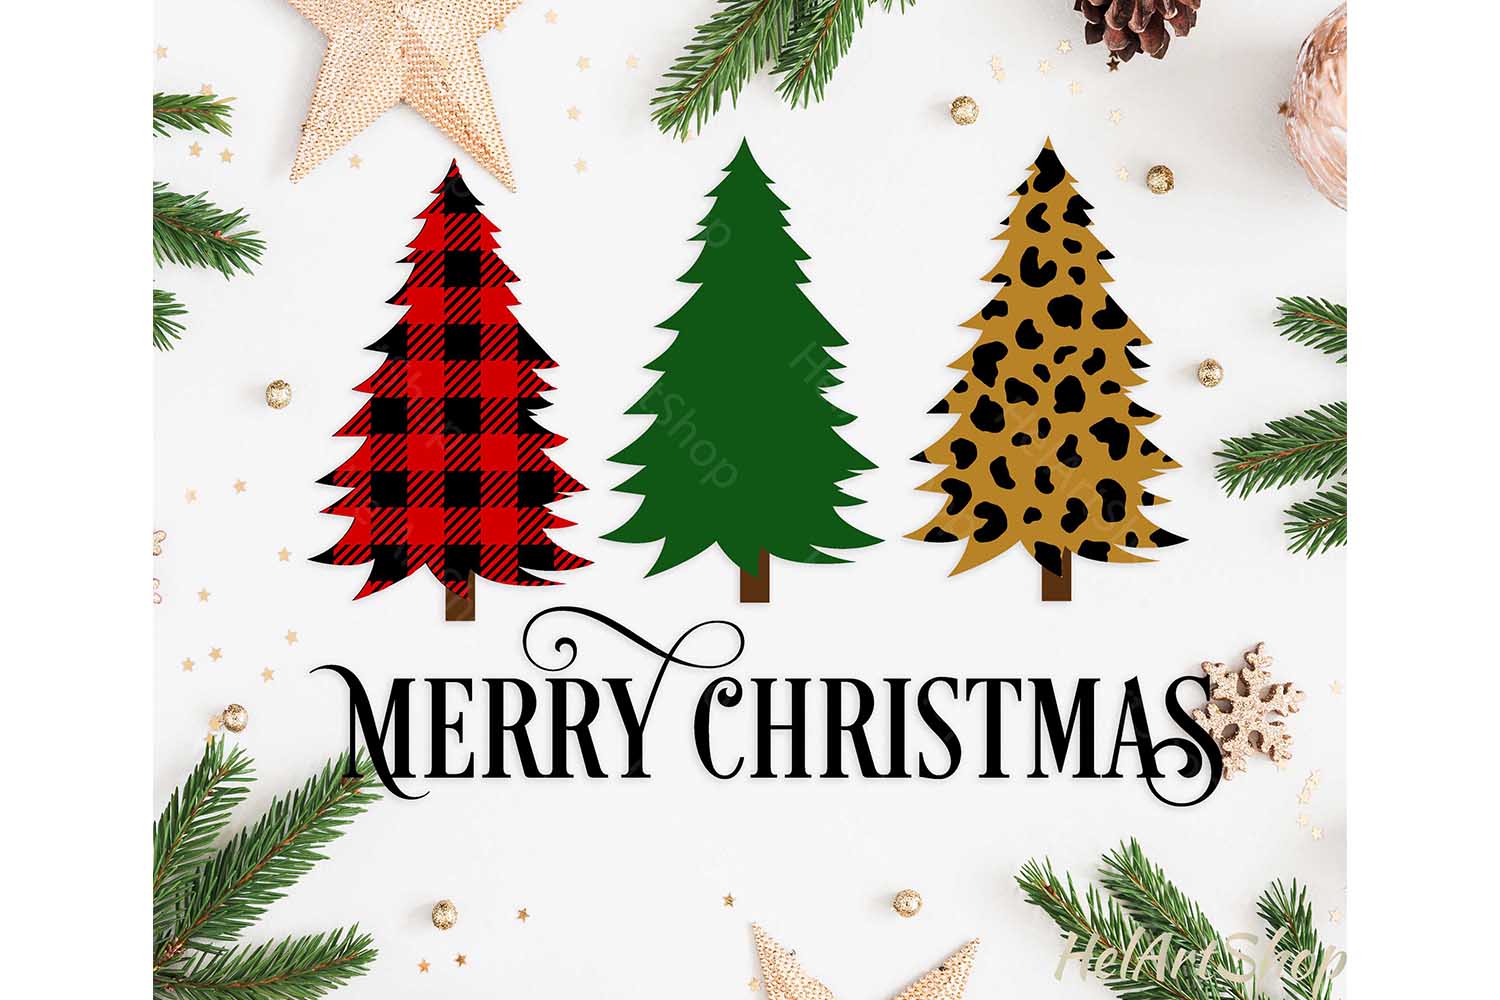 Merry Christmas svg, Christmas tree svg, Buffalo plaid svg